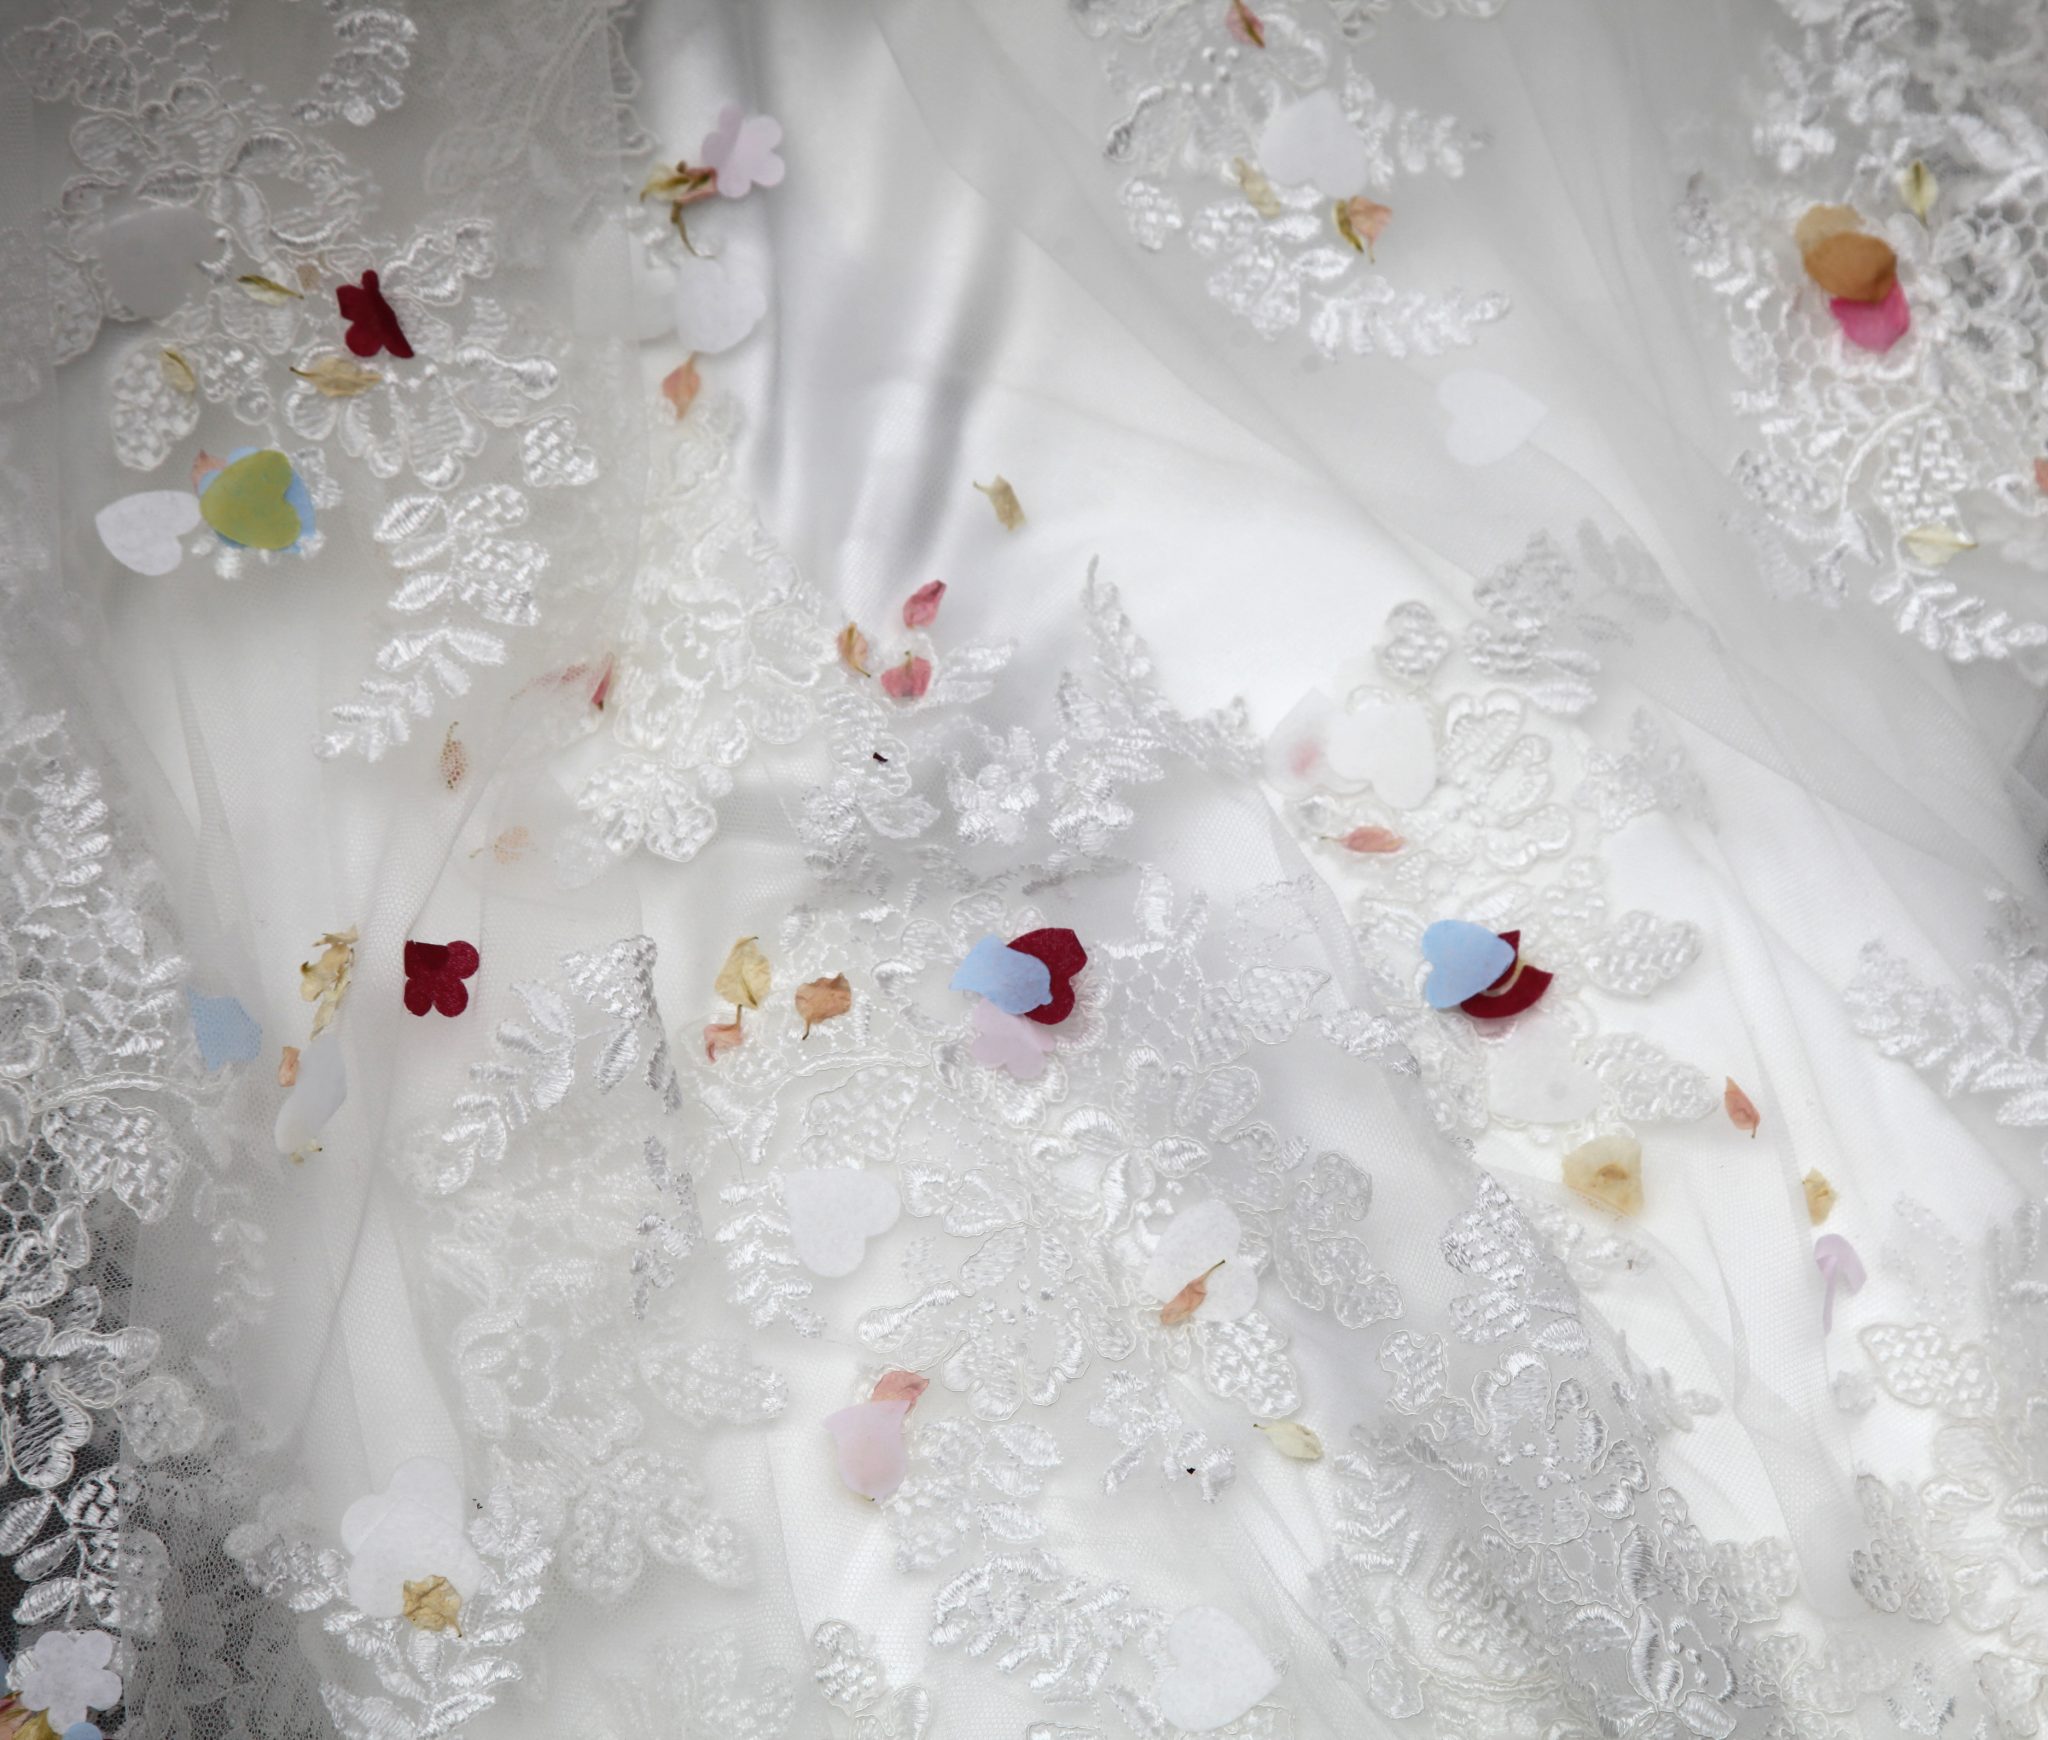 Confetti on wedding dress